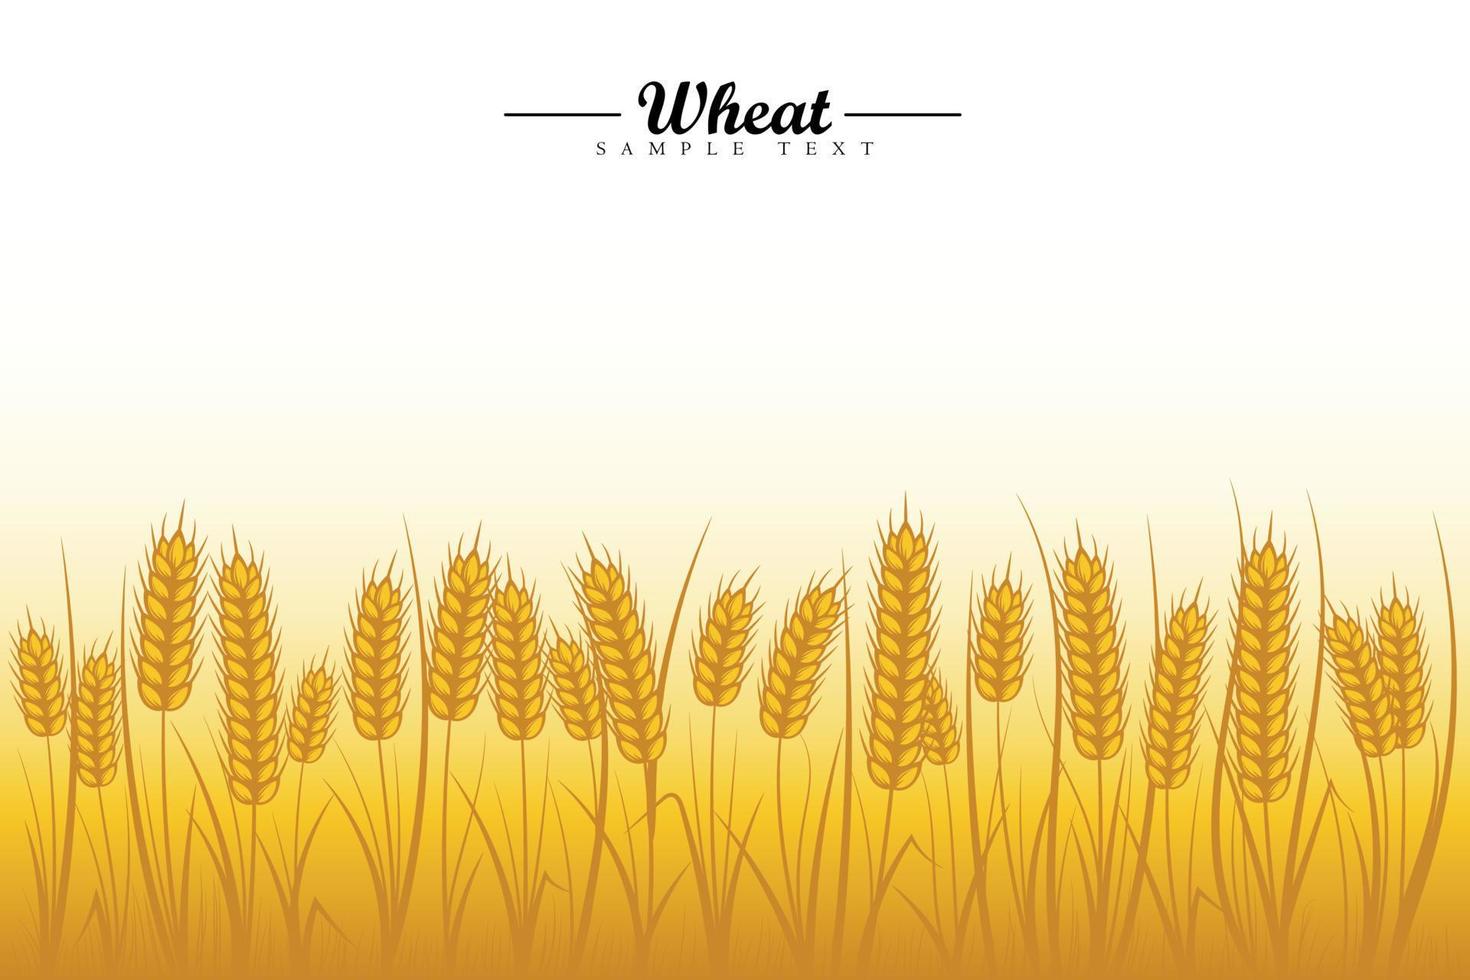 fundo do campo de trigo. espigas de trigo dourado de cereais com árvore de trigo e folha de trigo no fundo branco vetor